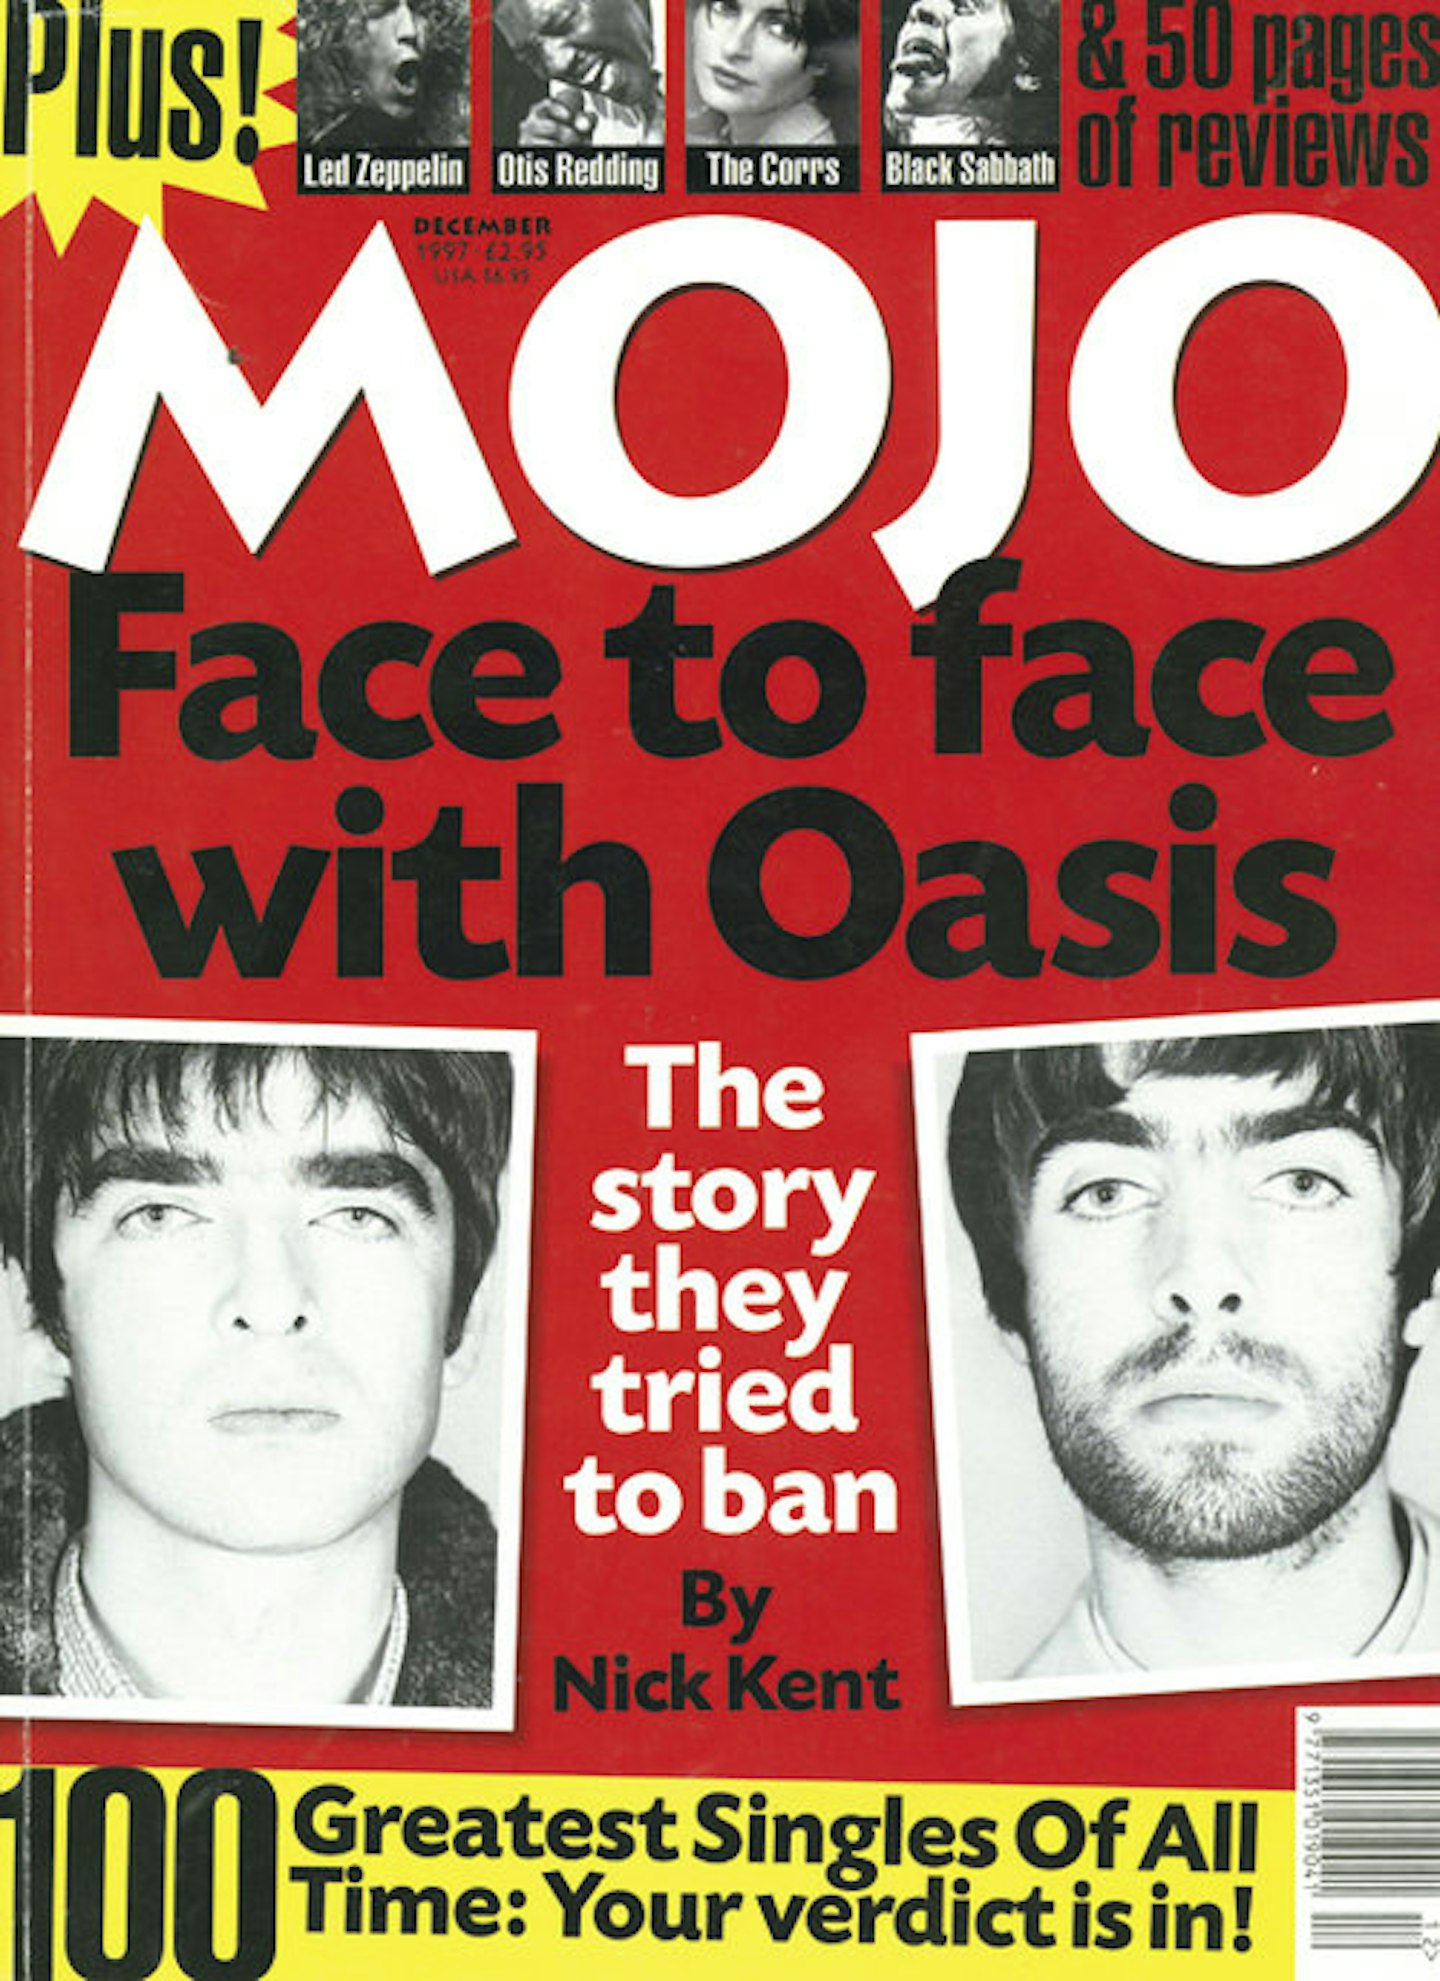 MOJO Issue 49 / December 1997